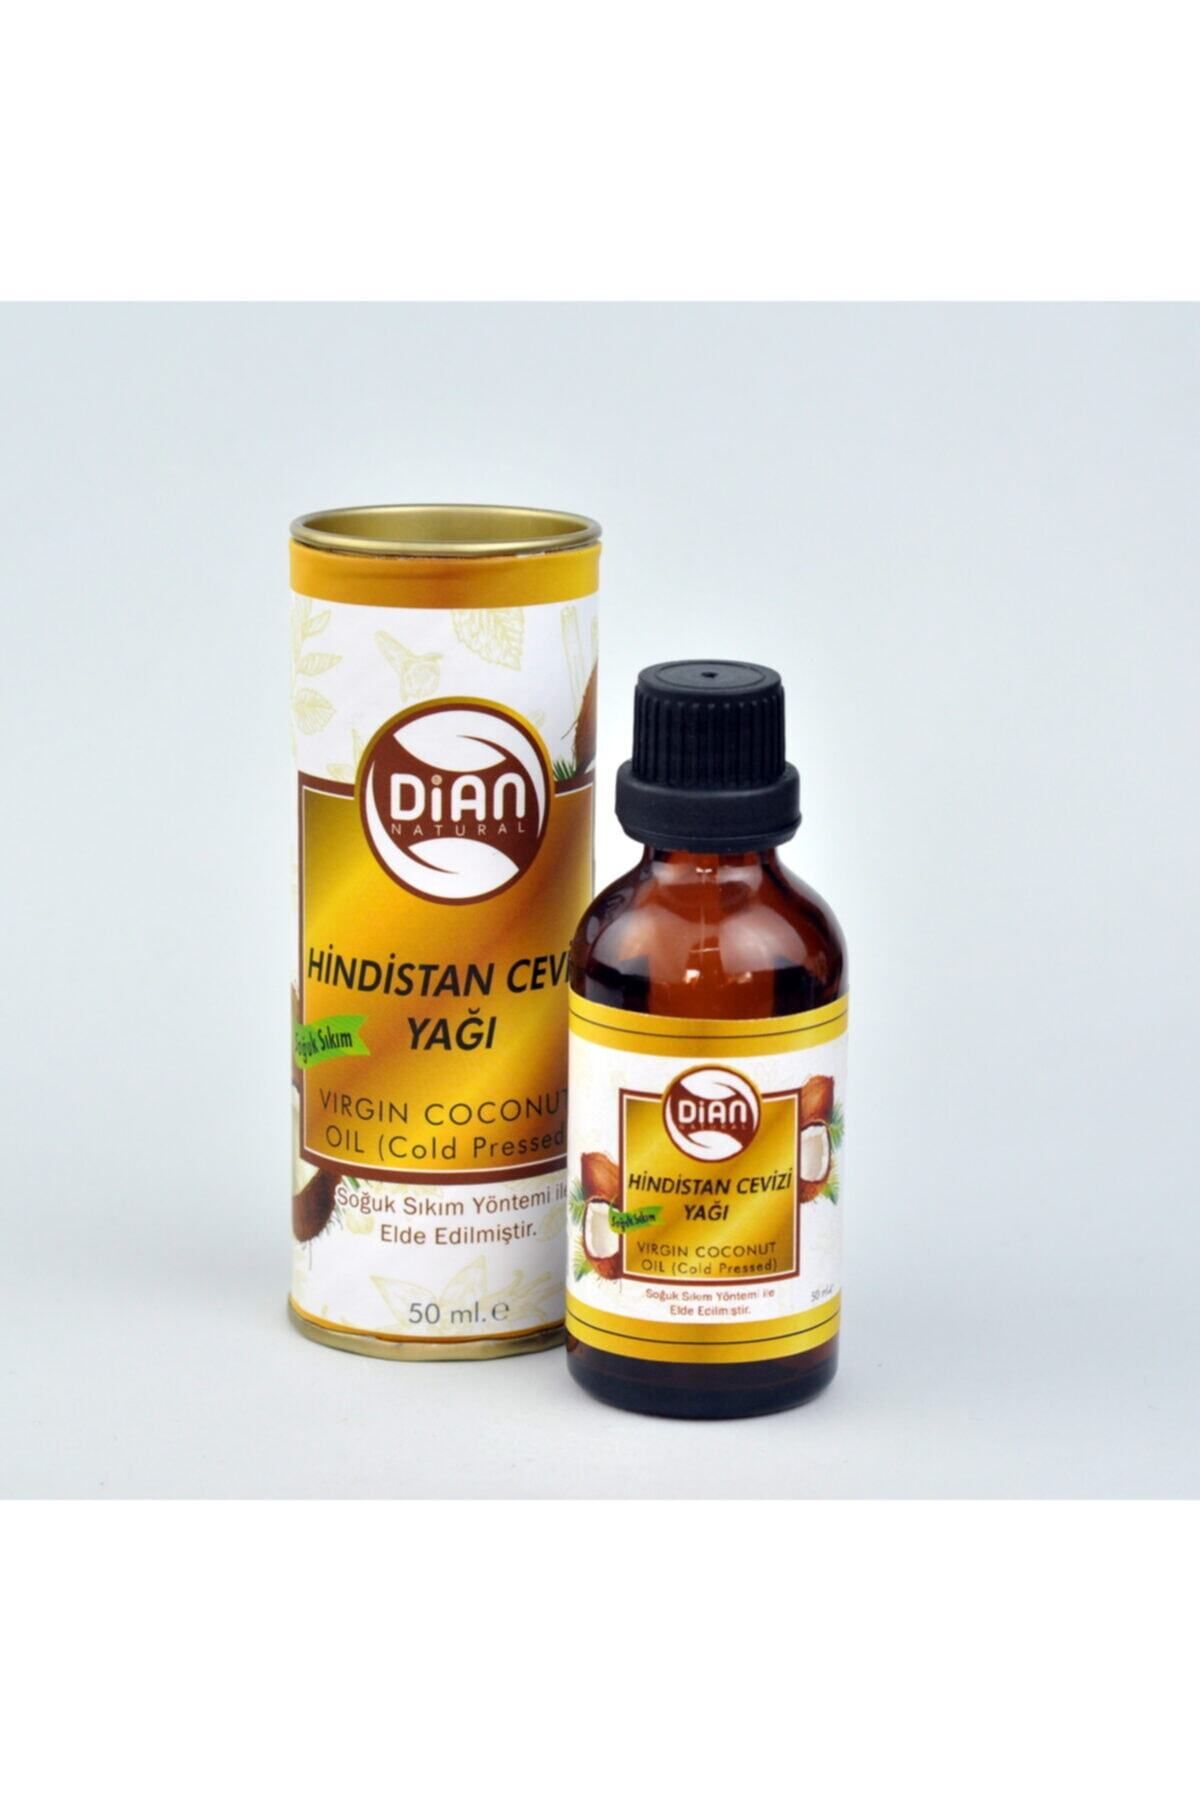 DİAN Natural Organik Hindistan Cevizi Yağı 50 ml - %100 Saf Doğal Soğuk Sıkım Virgin Coconut Oil